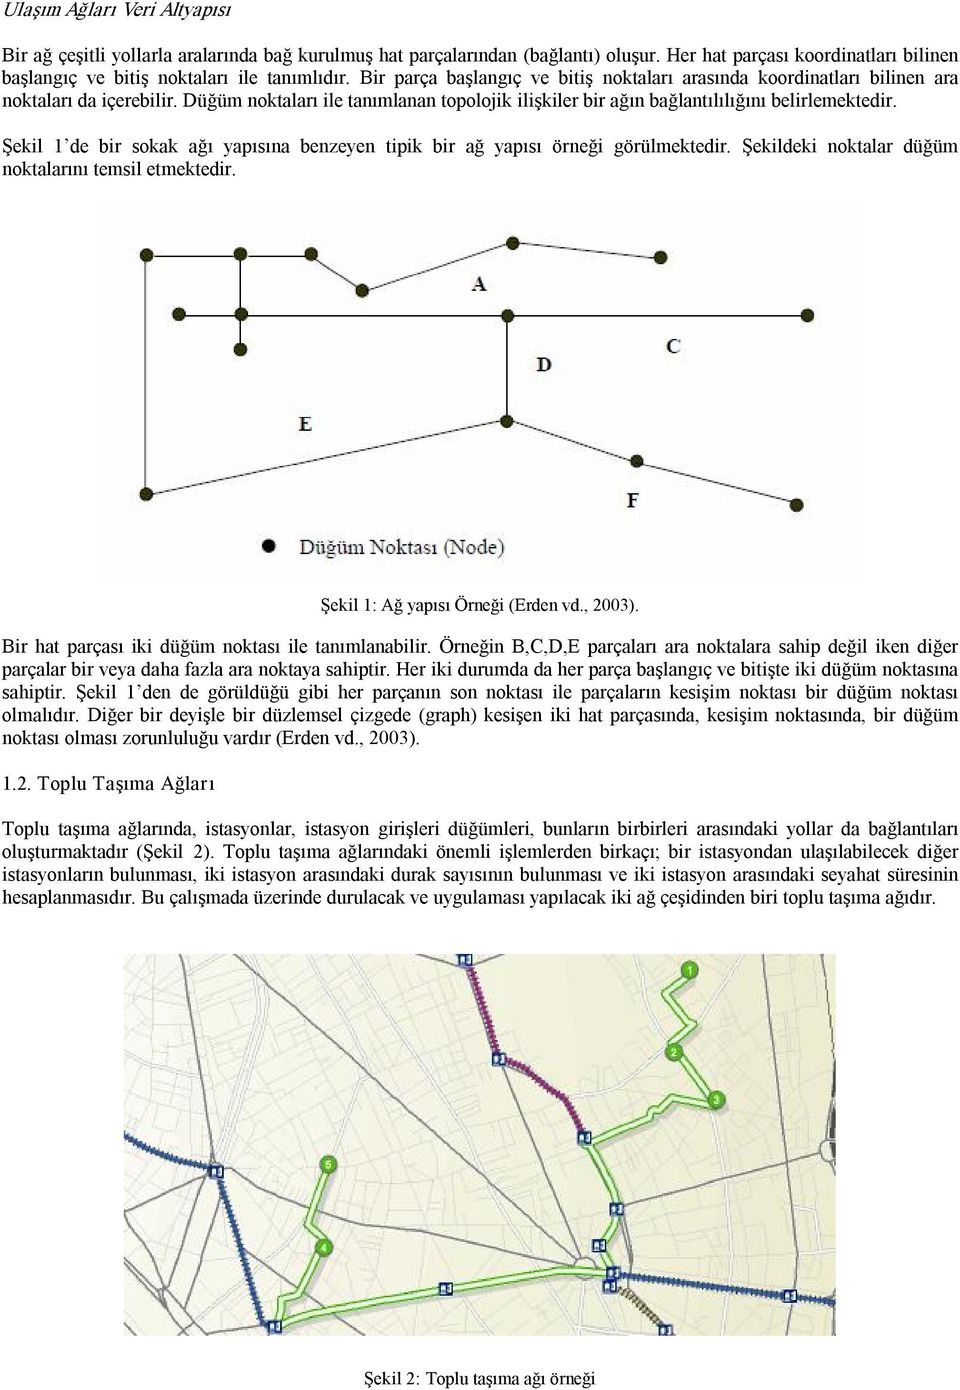 Şekil 1 de bir sokak ağı yapısına benzeyen tipik bir ağ yapısı örneği görülmektedir. Şekildeki noktalar düğüm noktalarını temsil etmektedir. Şekil 1: Ağ yapısı Örneği (Erden vd., 2003).